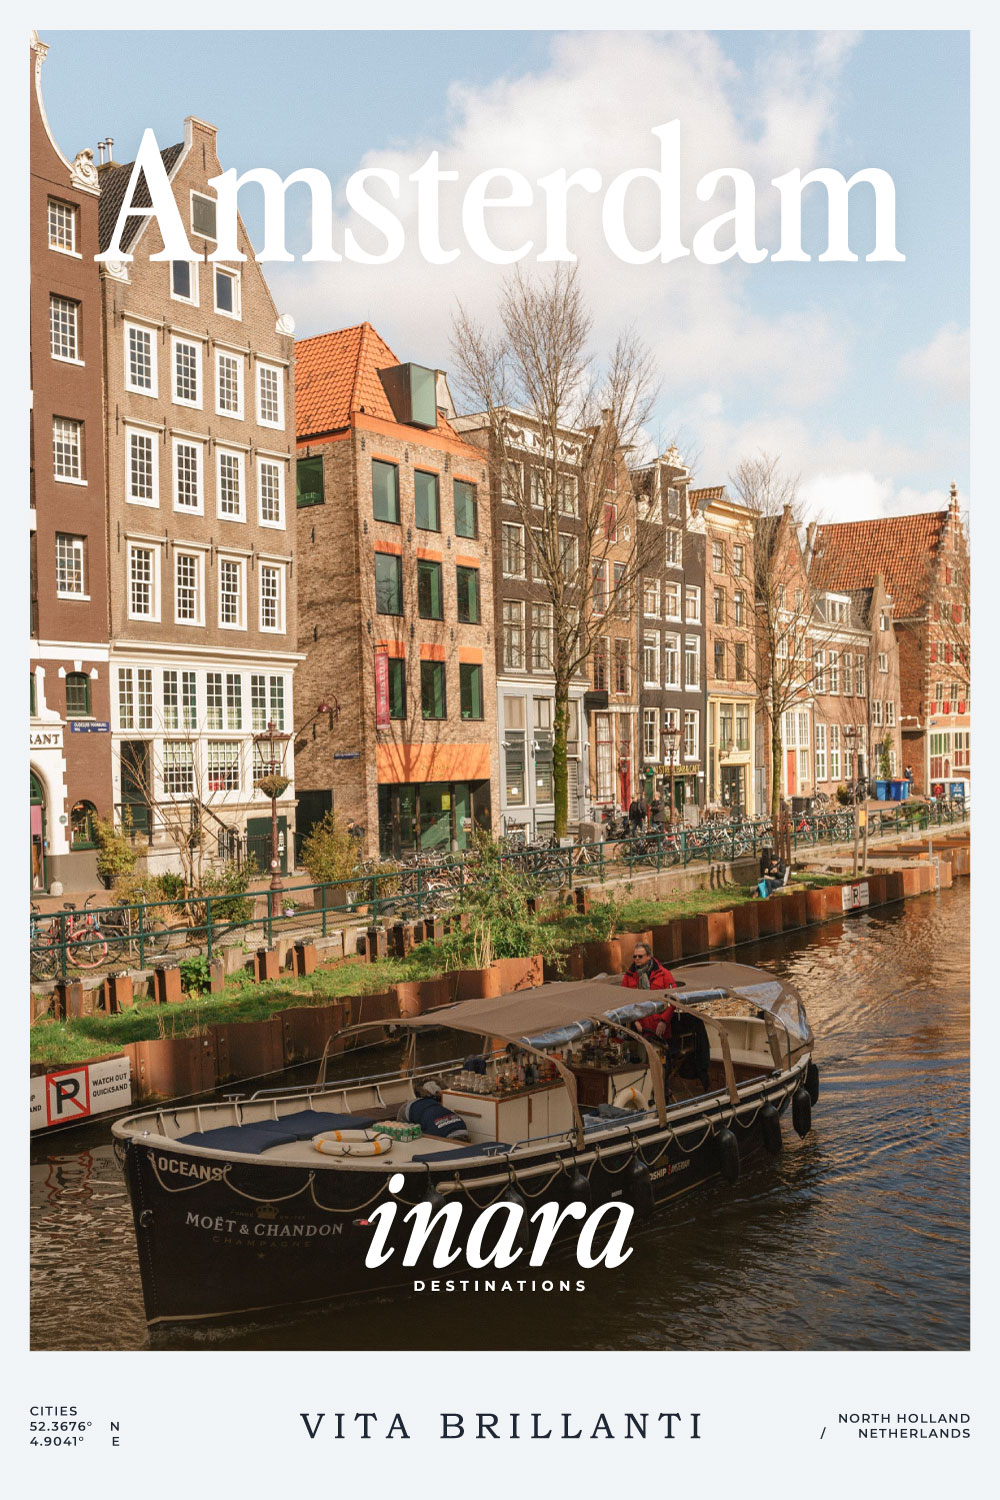 Amsterdam destination cover